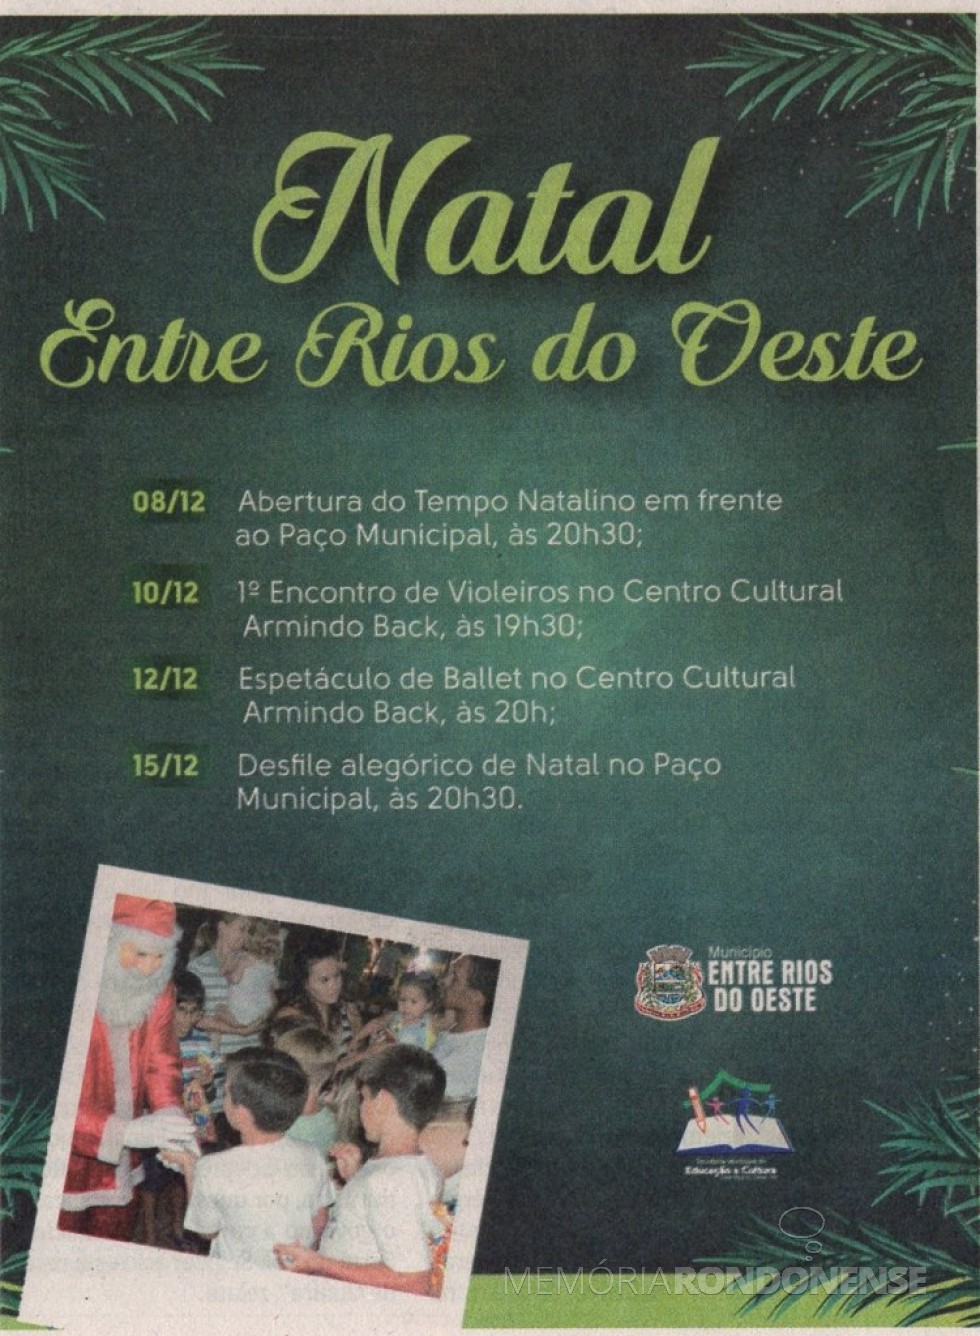 || Publicação da agenda 2017 de eventos natalinos na cidade de Entre Rios d o Oeste. 
Imagem: O Presente - FOTO 13 - 